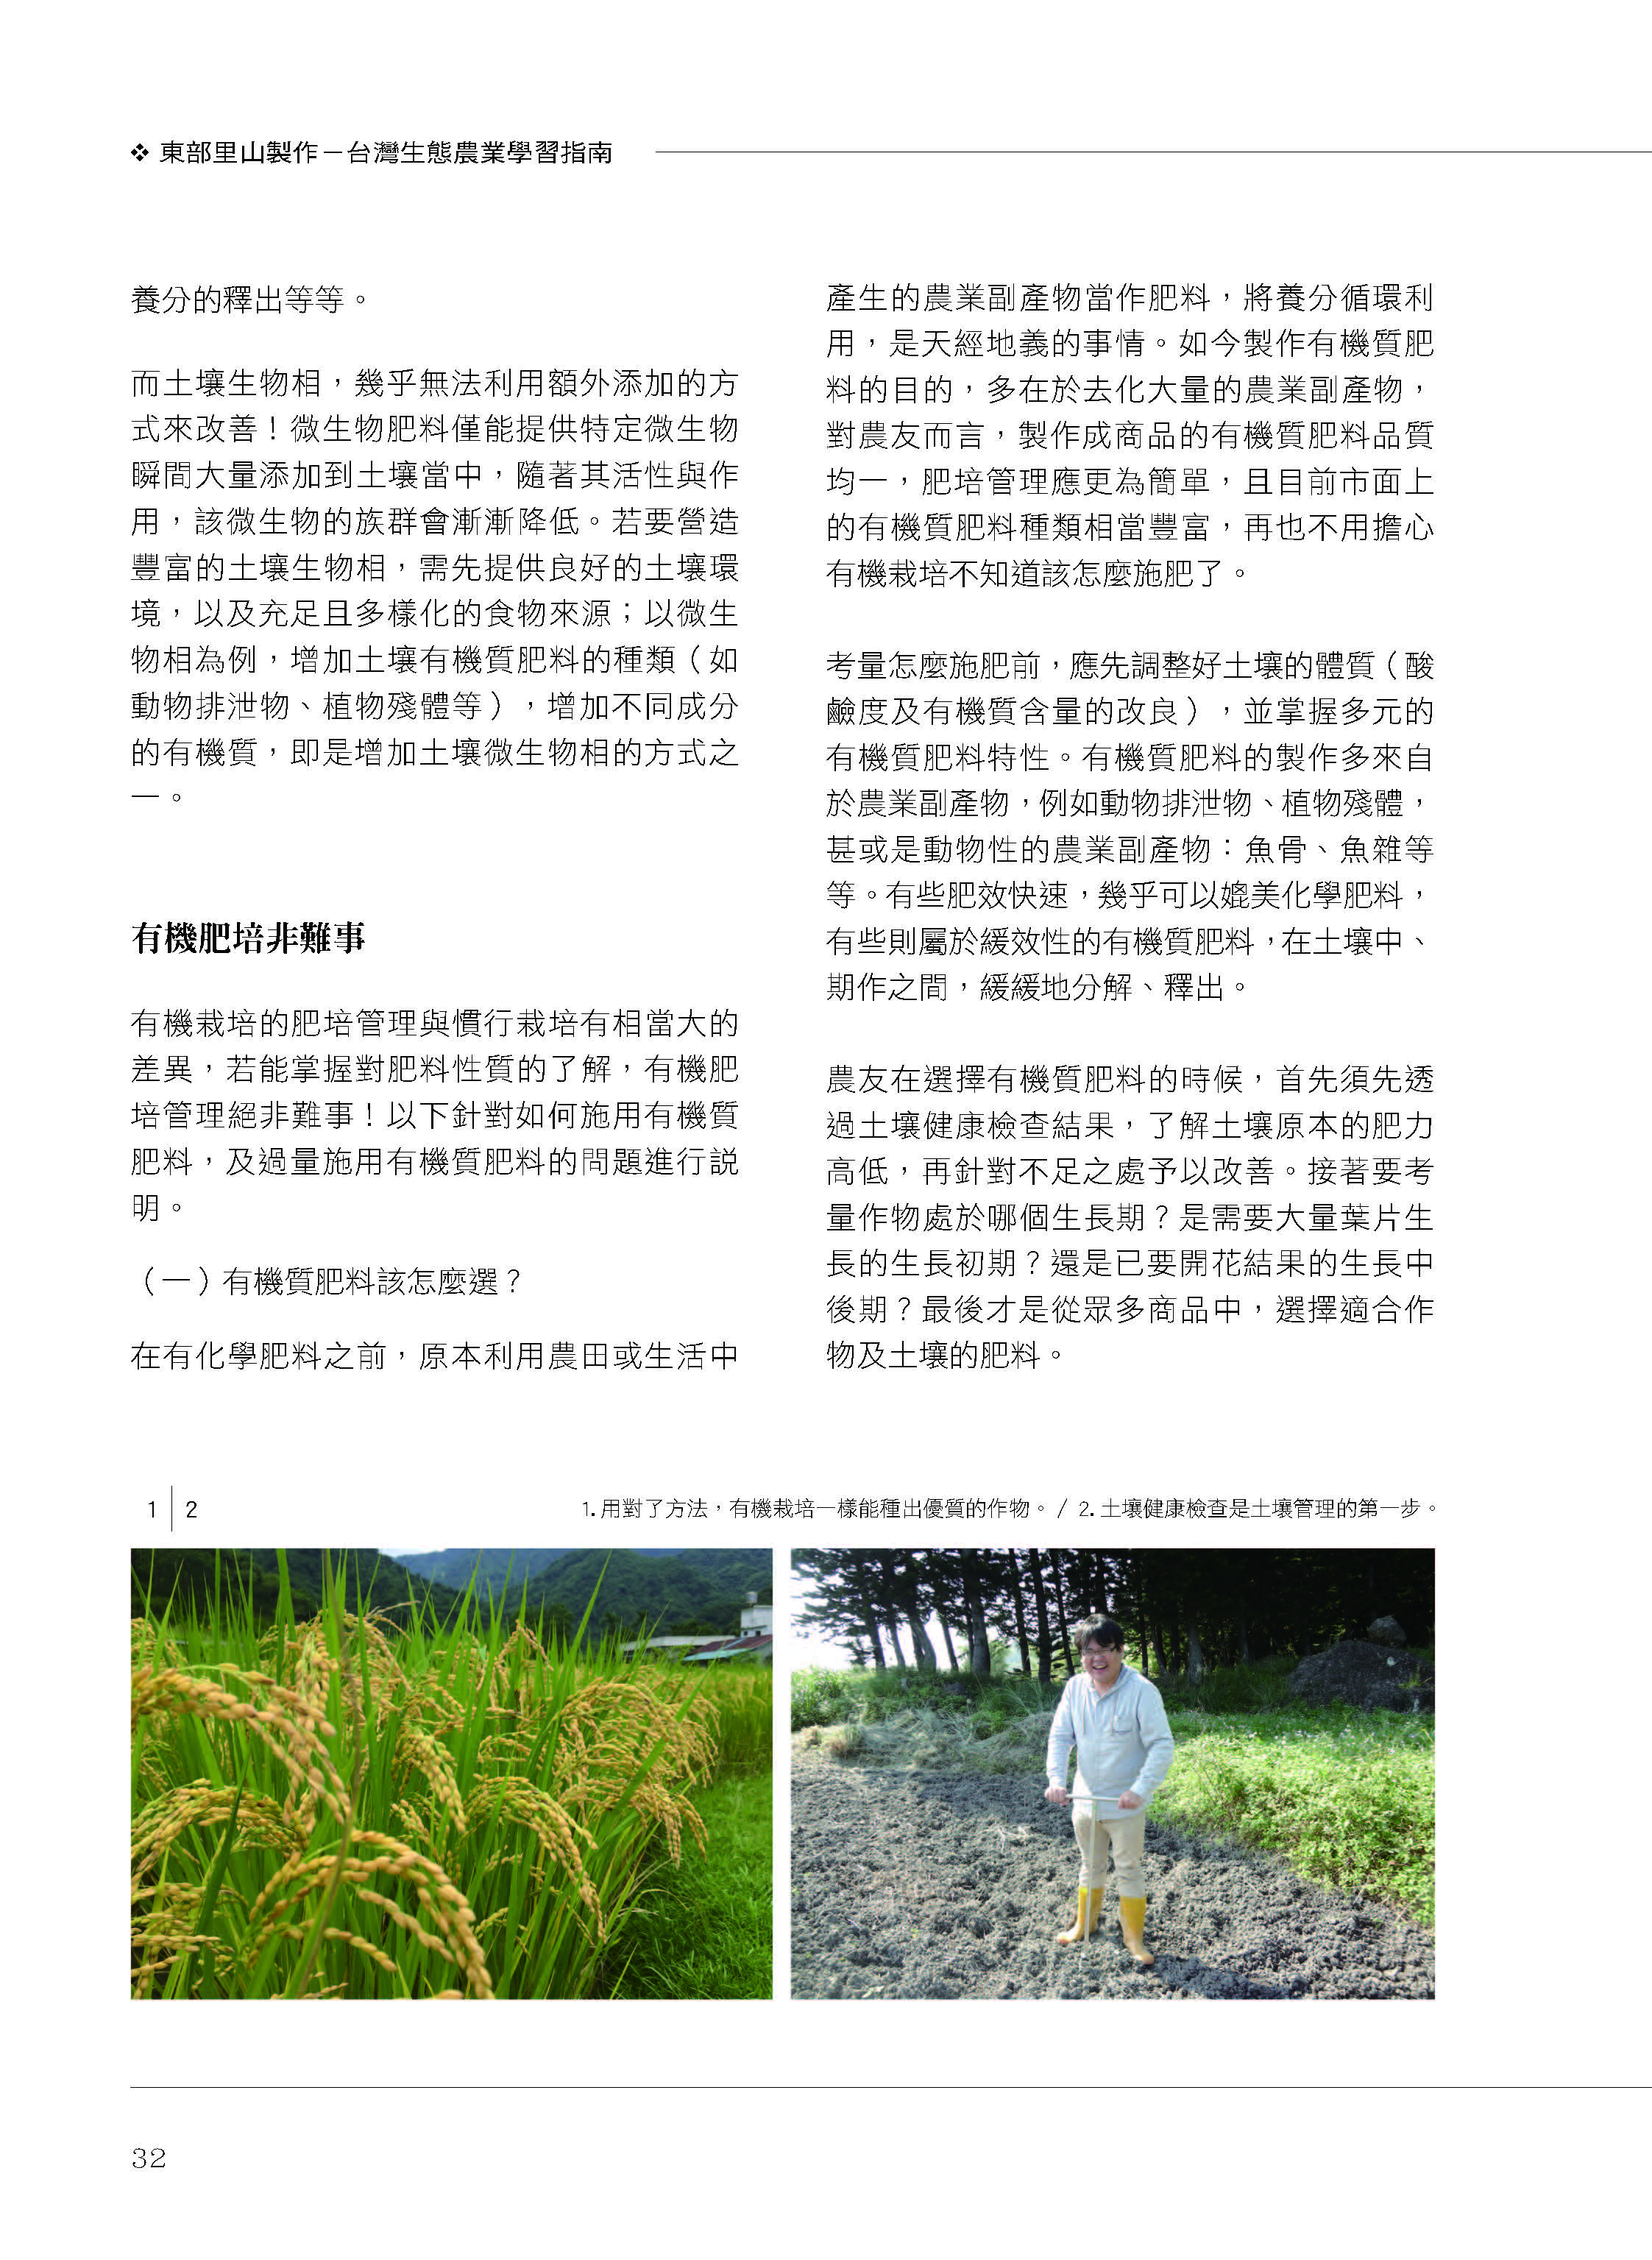 里山台灣－專欄2－研究與現場:有機栽培的土壤肥力管理-3